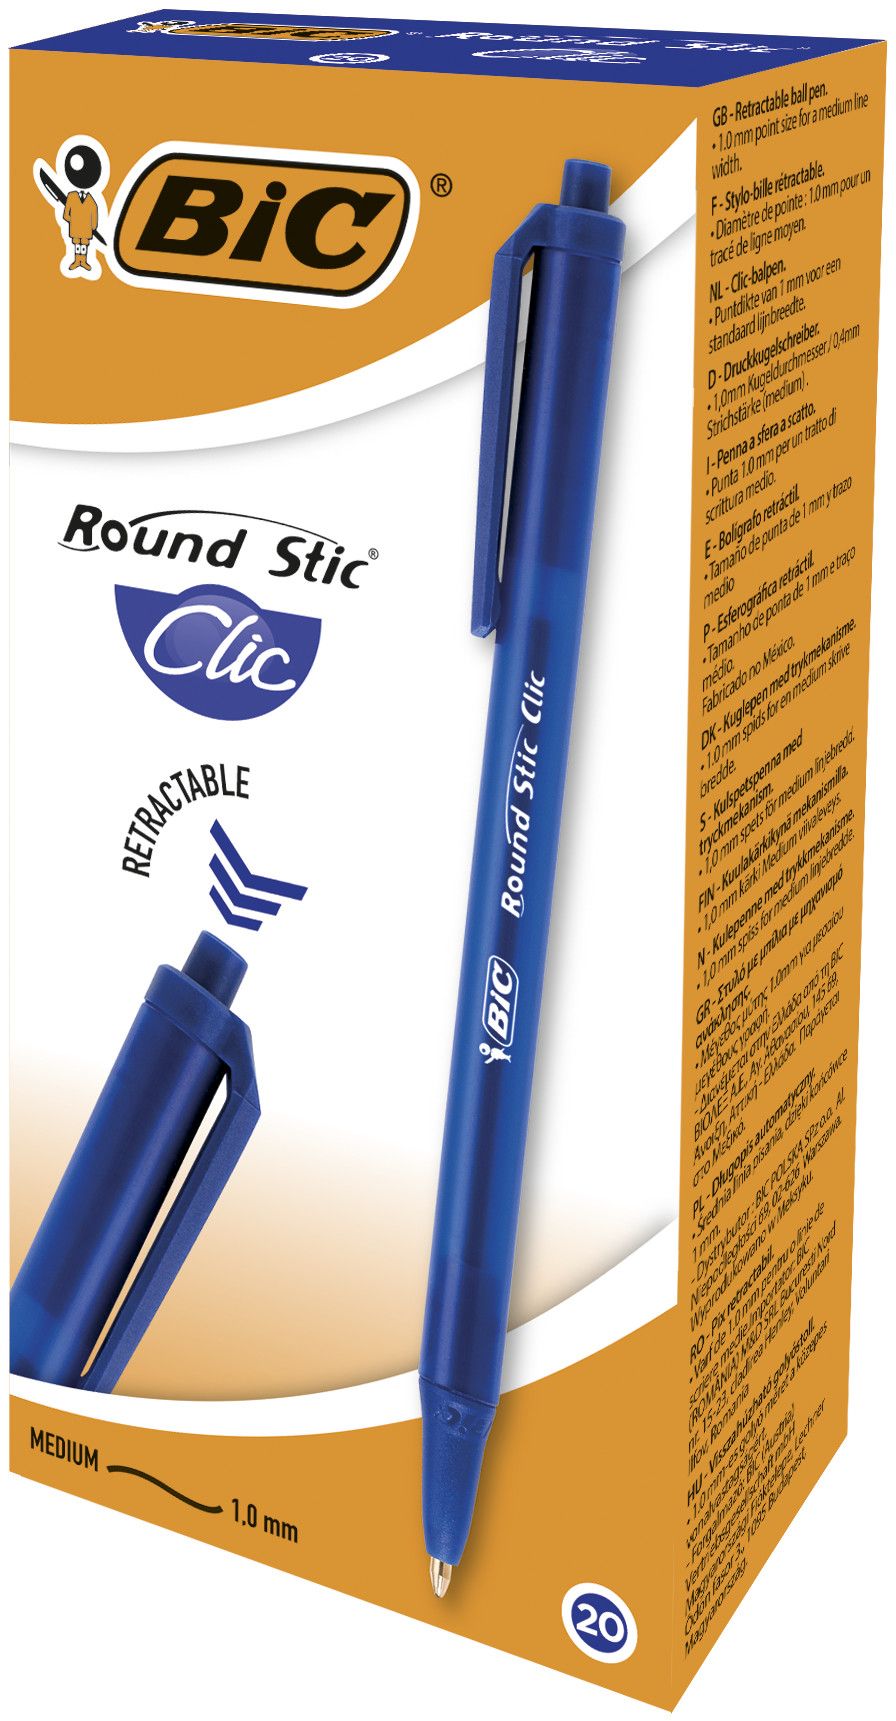 Ручка шариковая bic round stic. BIC набор шариковых ручек Round Stic clic, 0.32 мм. Шариковая ручка BIC Round Stick clic. Round Stick ручка BIC.